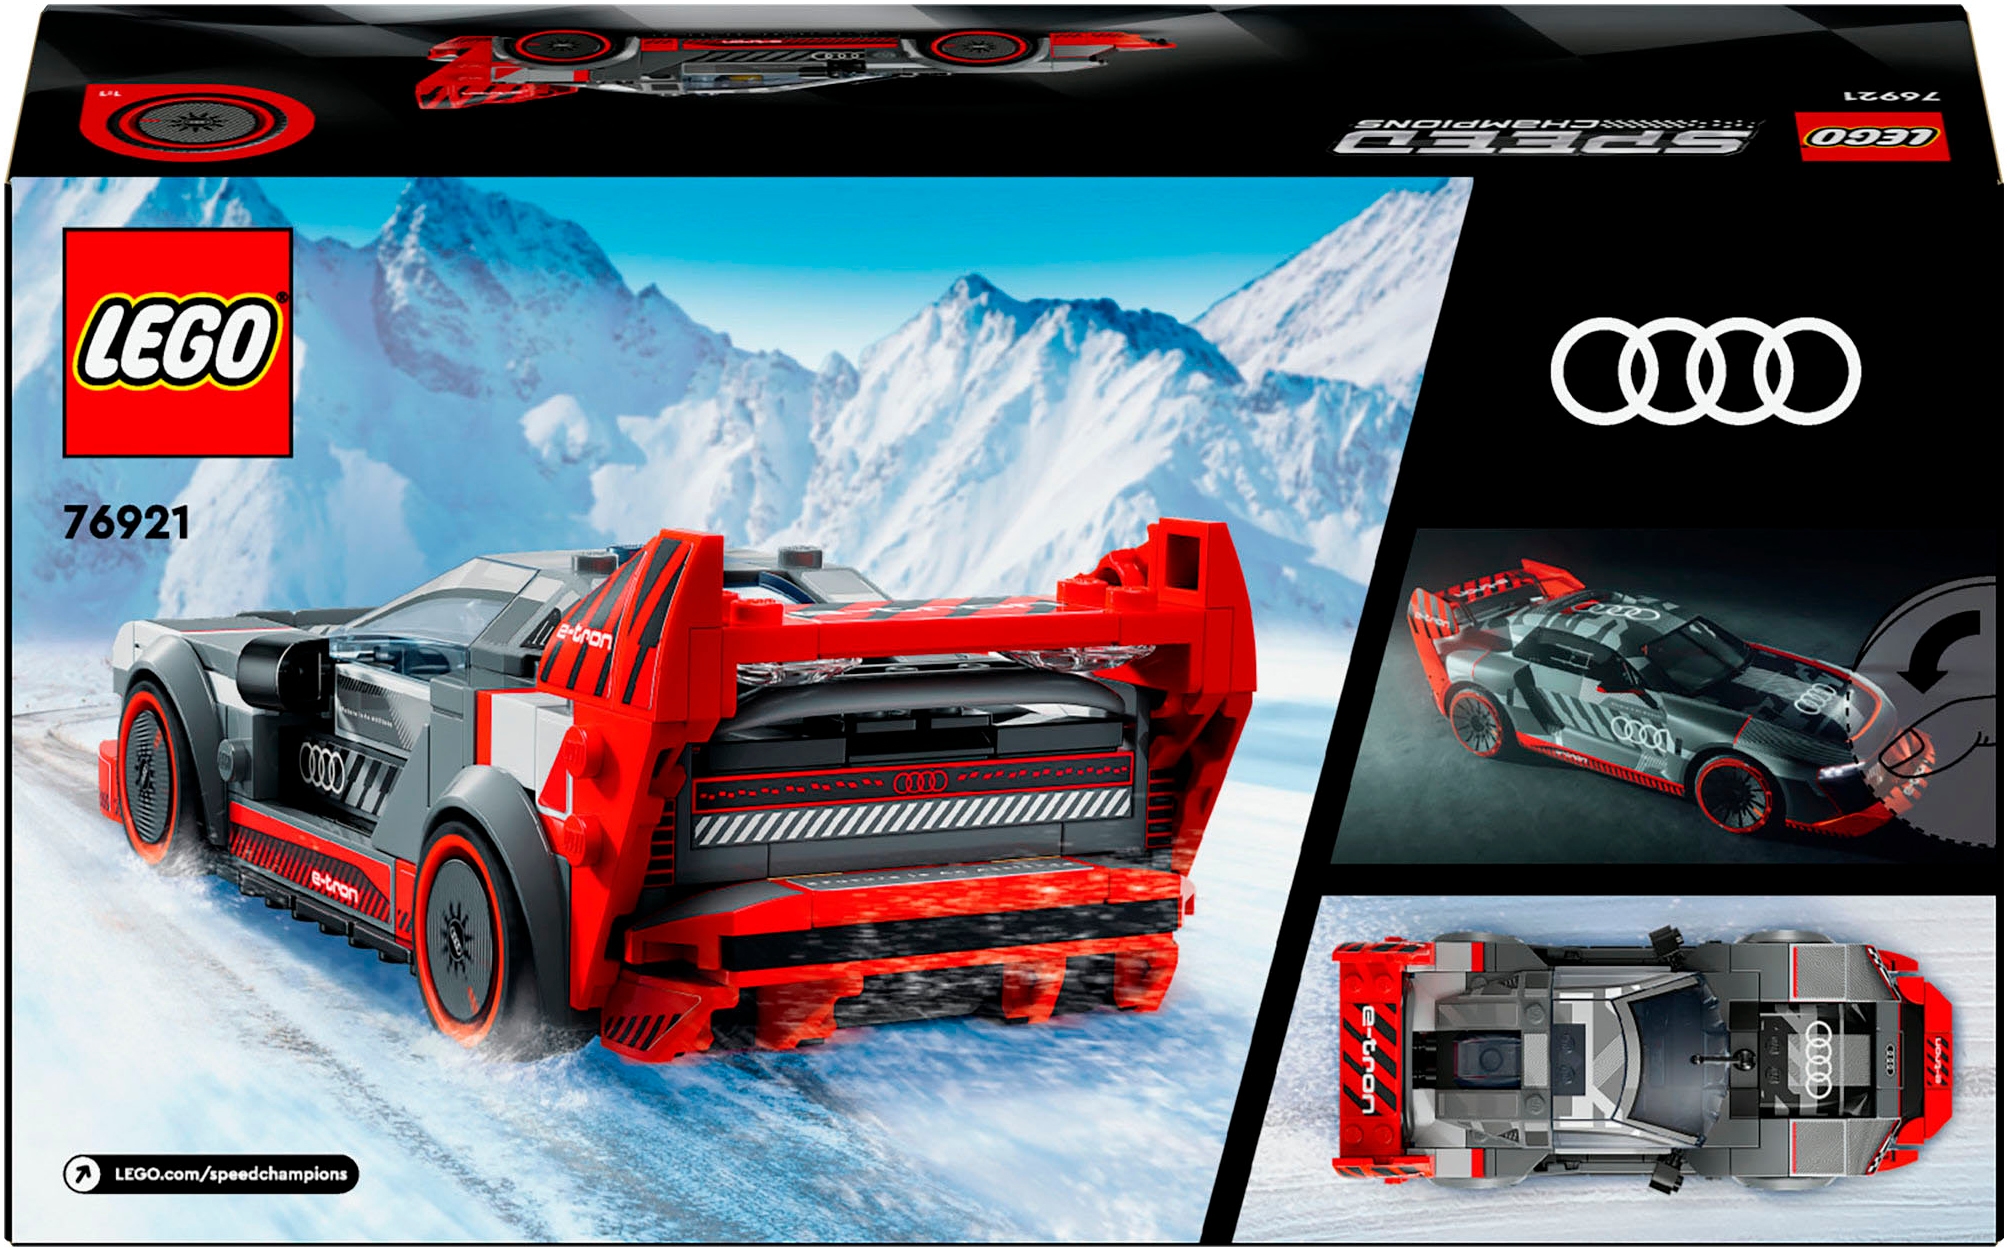 LEGO® Konstruktionsspielsteine »Audi S1 e-tron quattro Rennwagen (76921), LEGO® Speed Champions«, (274 St.), Made in Europe